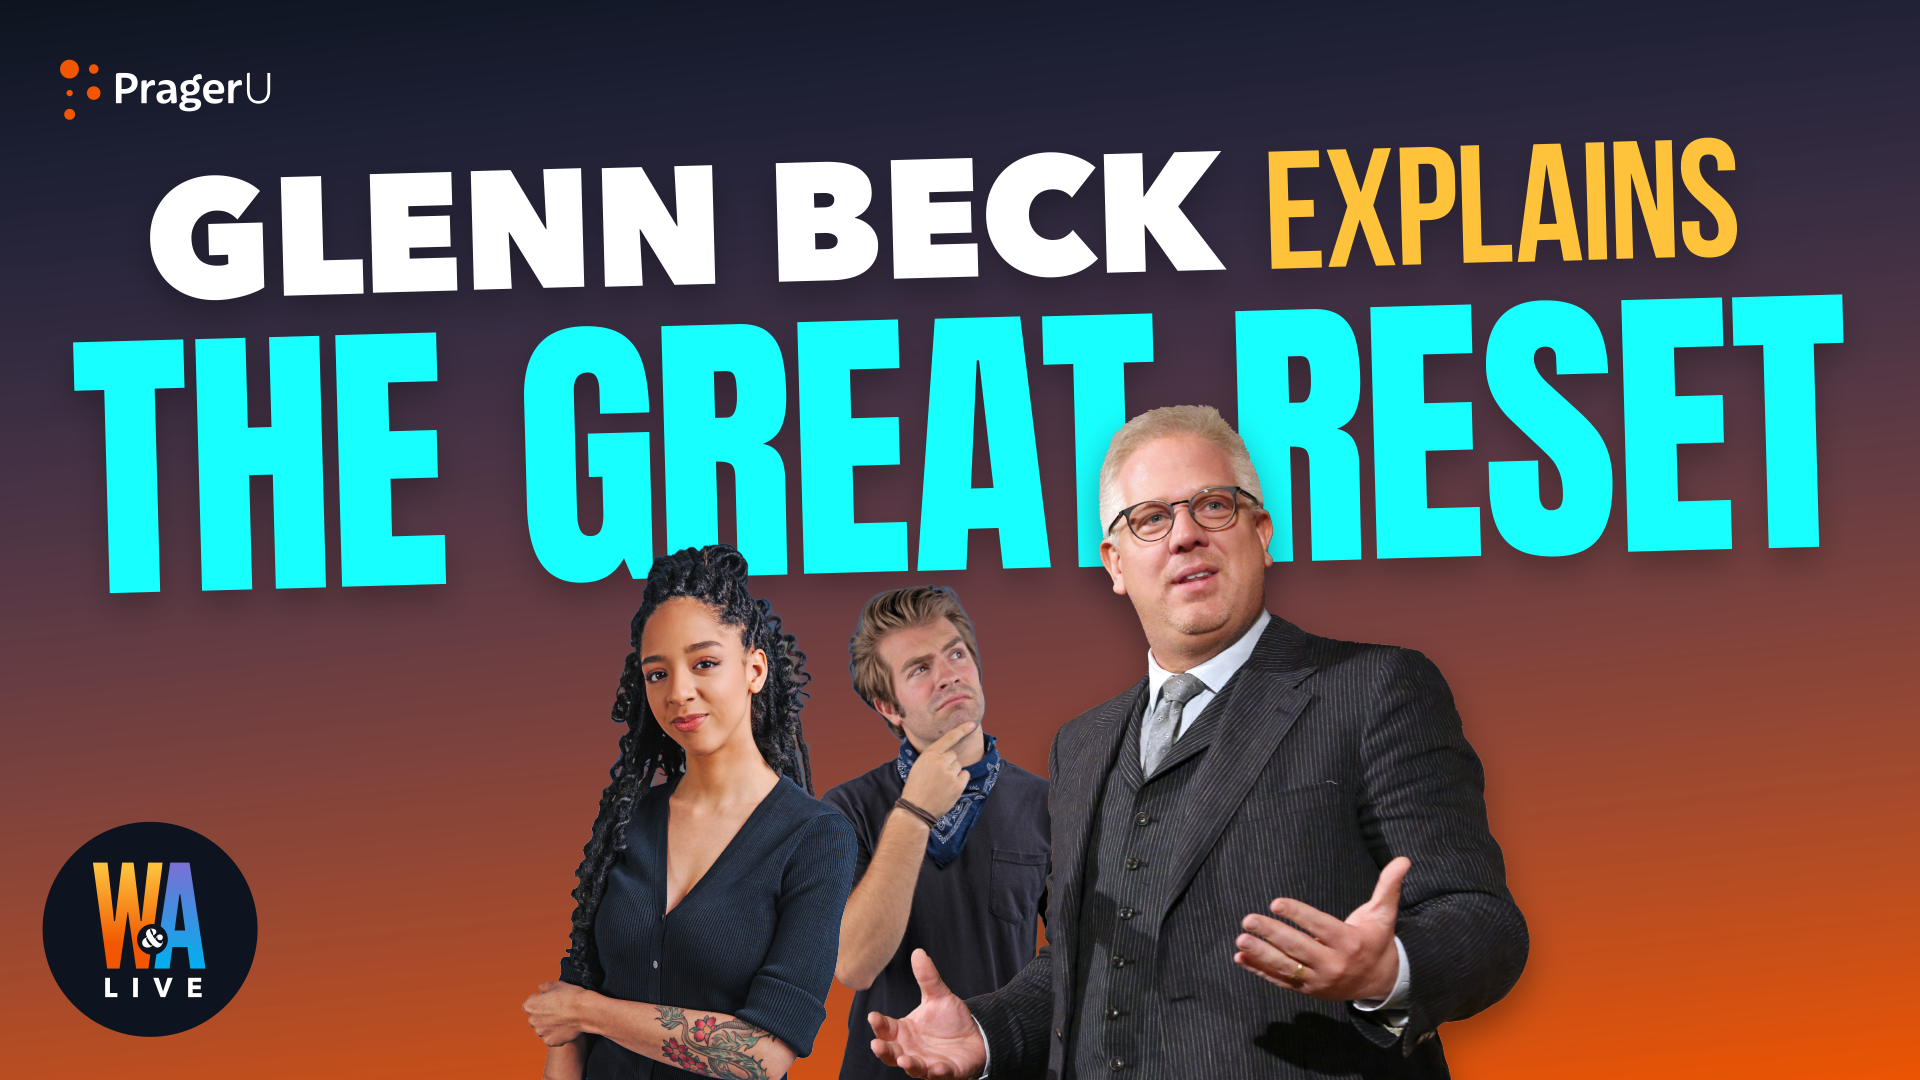 Glenn Beck Explains the Great Reset